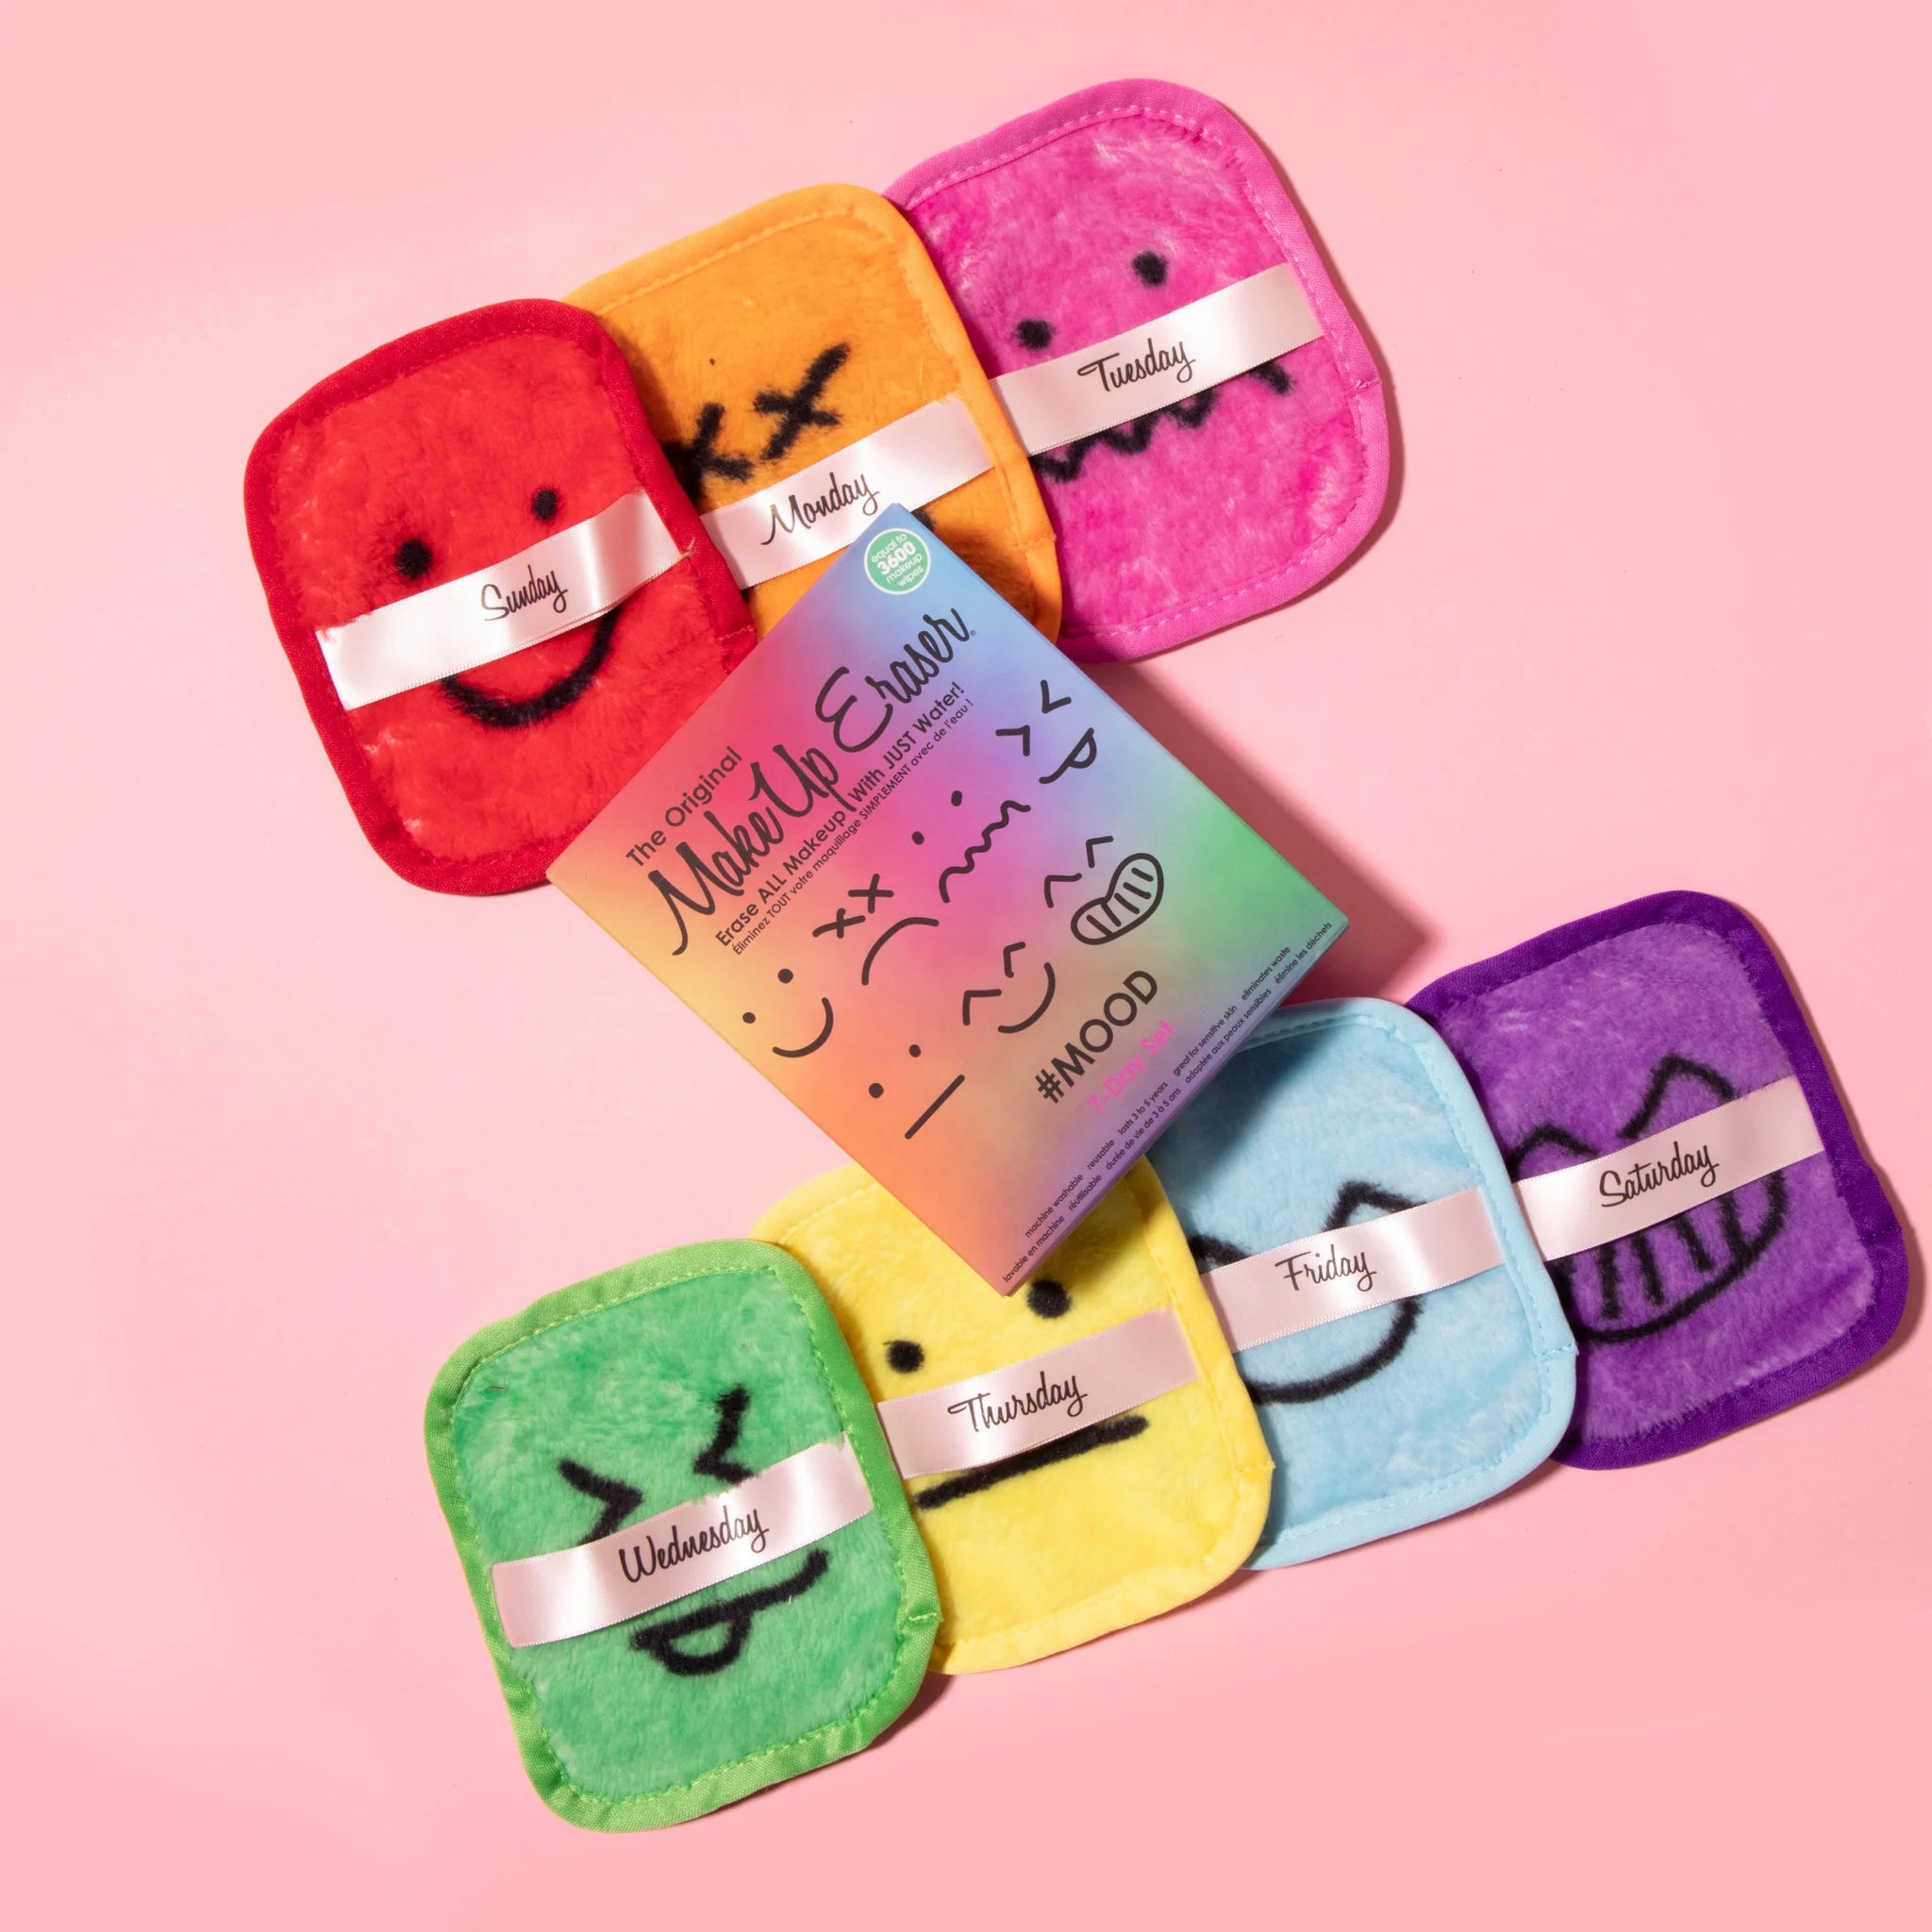 MakeUp Eraser - #Mood 7-Day Set